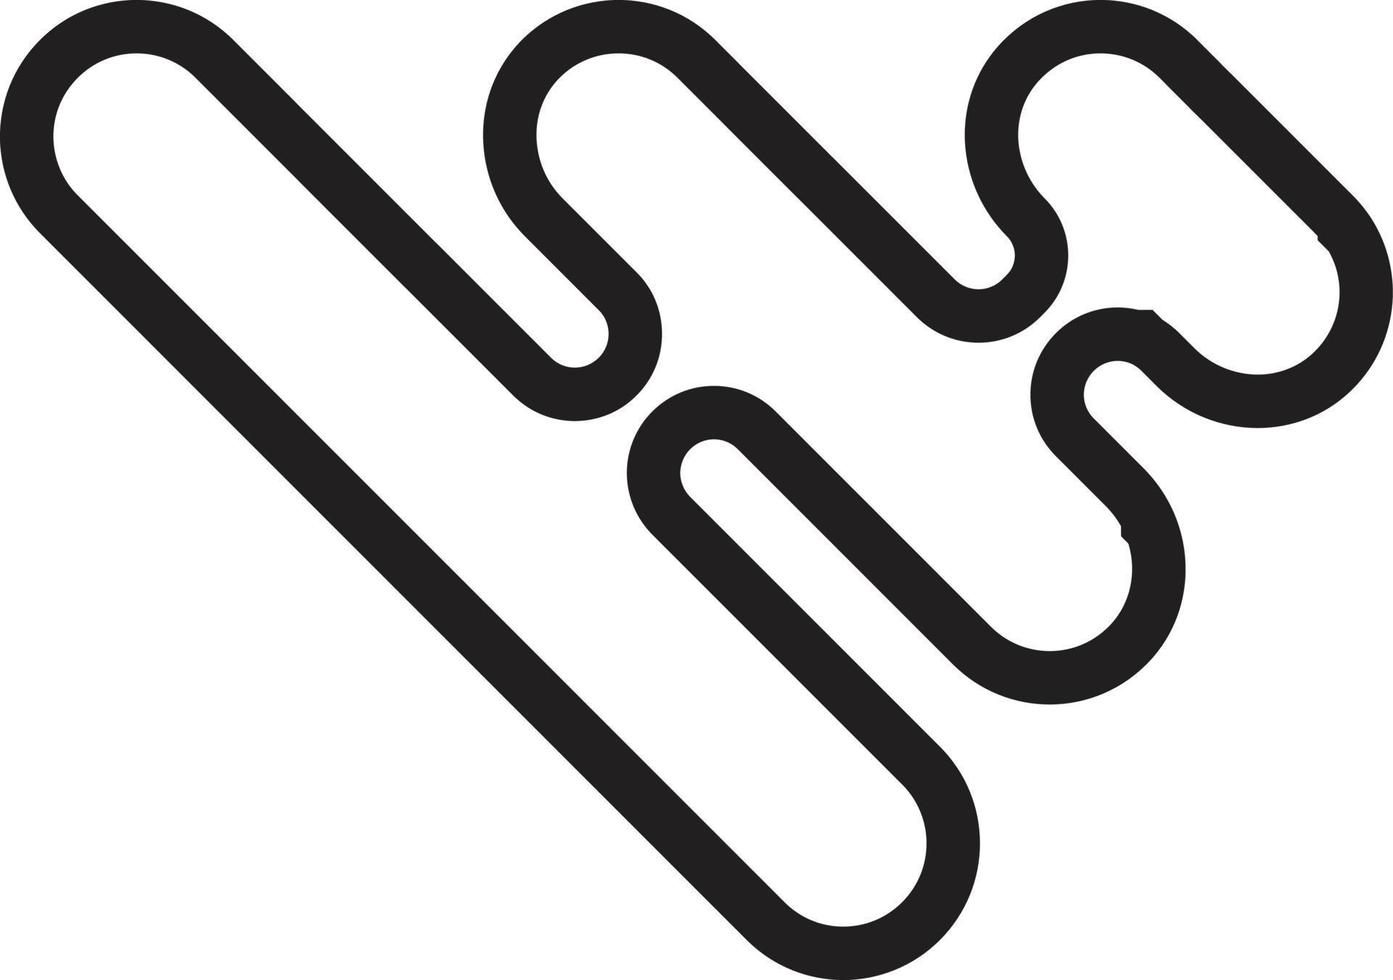 ilustração abstrata do logotipo de três linhas em estilo moderno e minimalista vetor